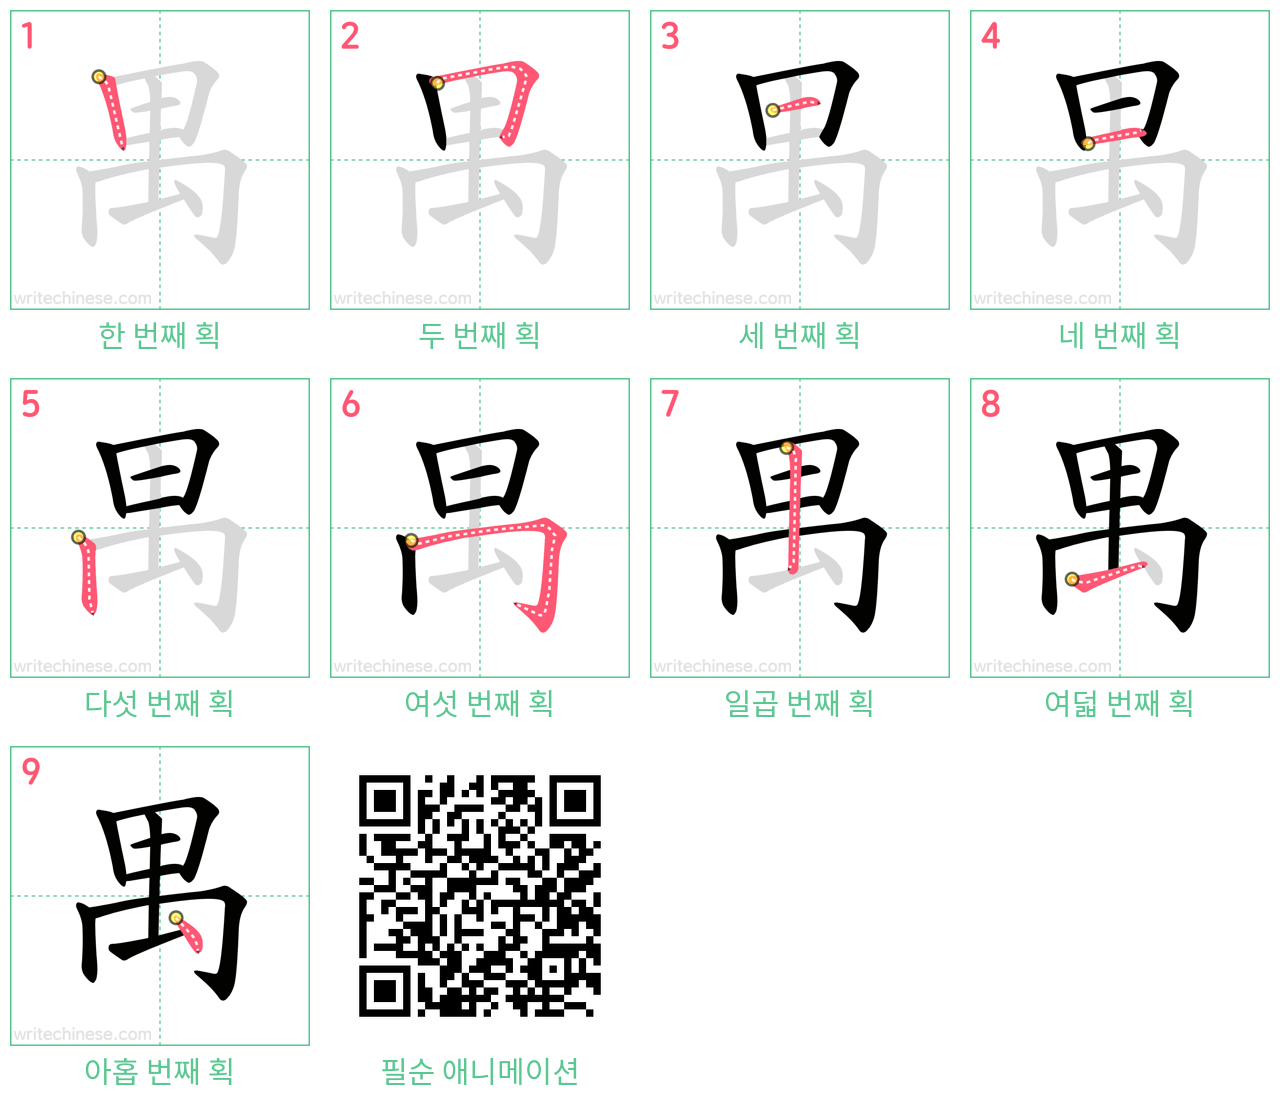 禺 step-by-step stroke order diagrams